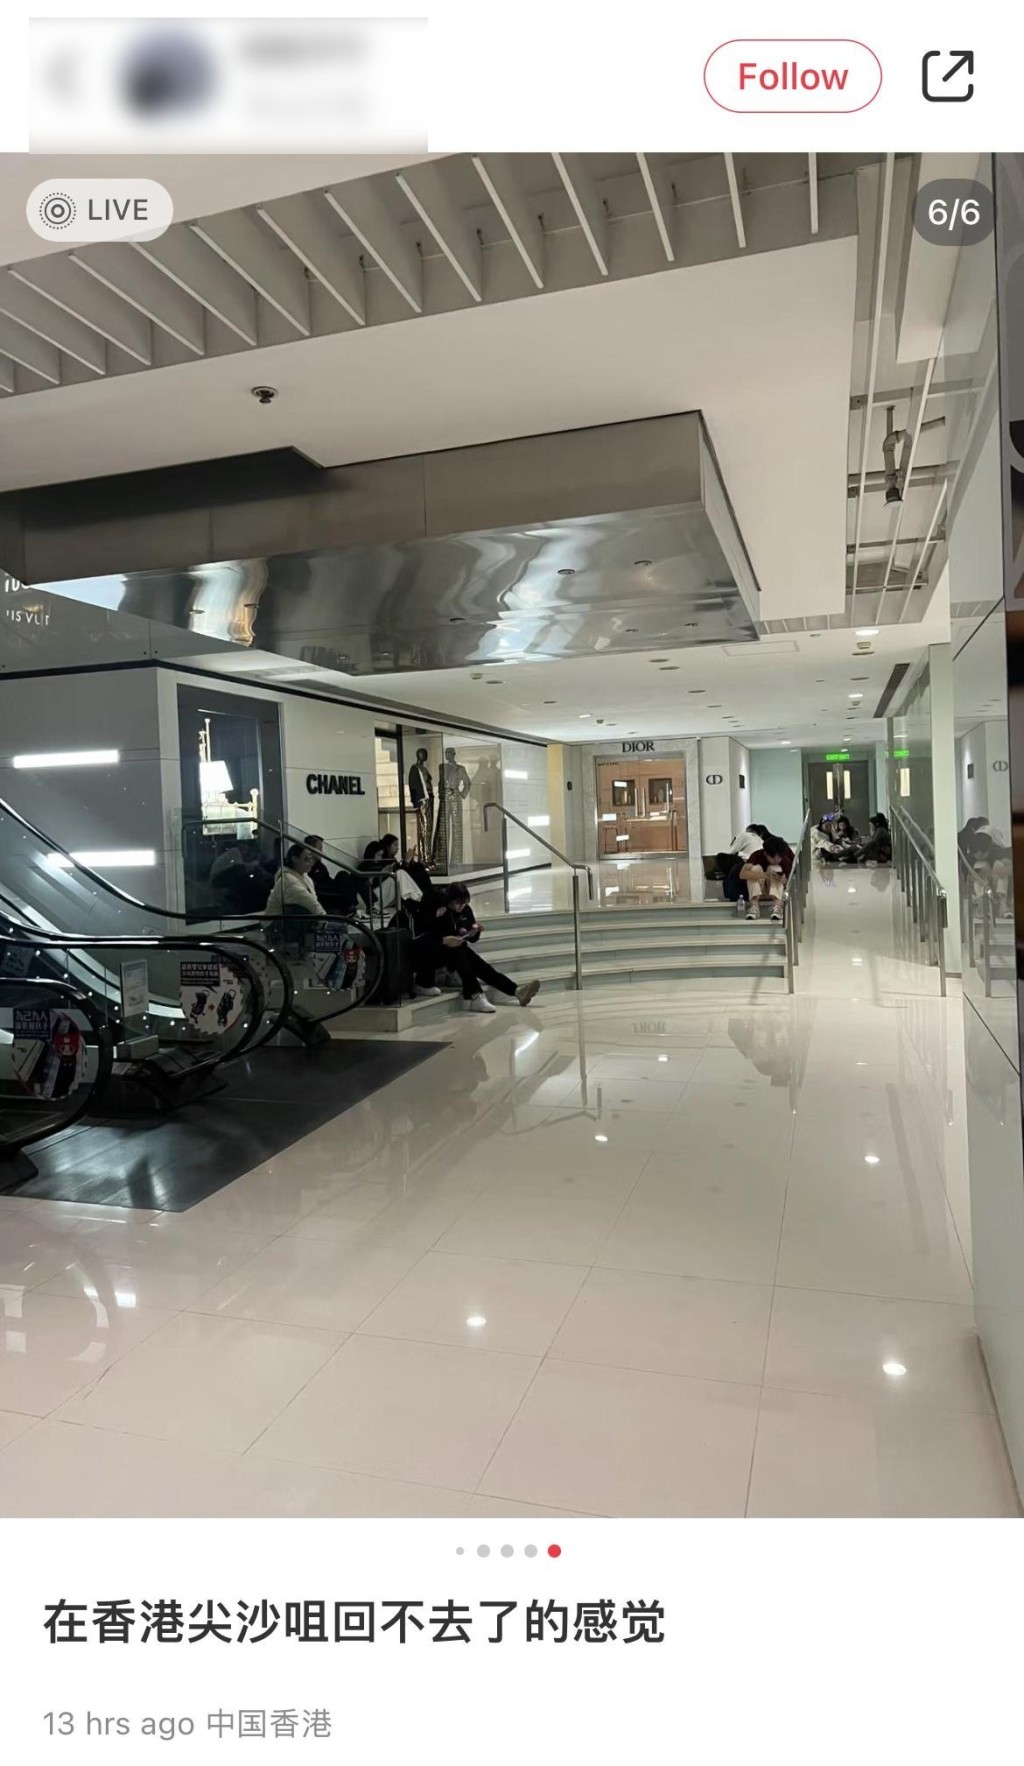 有旅客在海港城商场靠著墙坐在地板上，名店CHANEL门外亦出现滞留旅客的身影。小红书图片